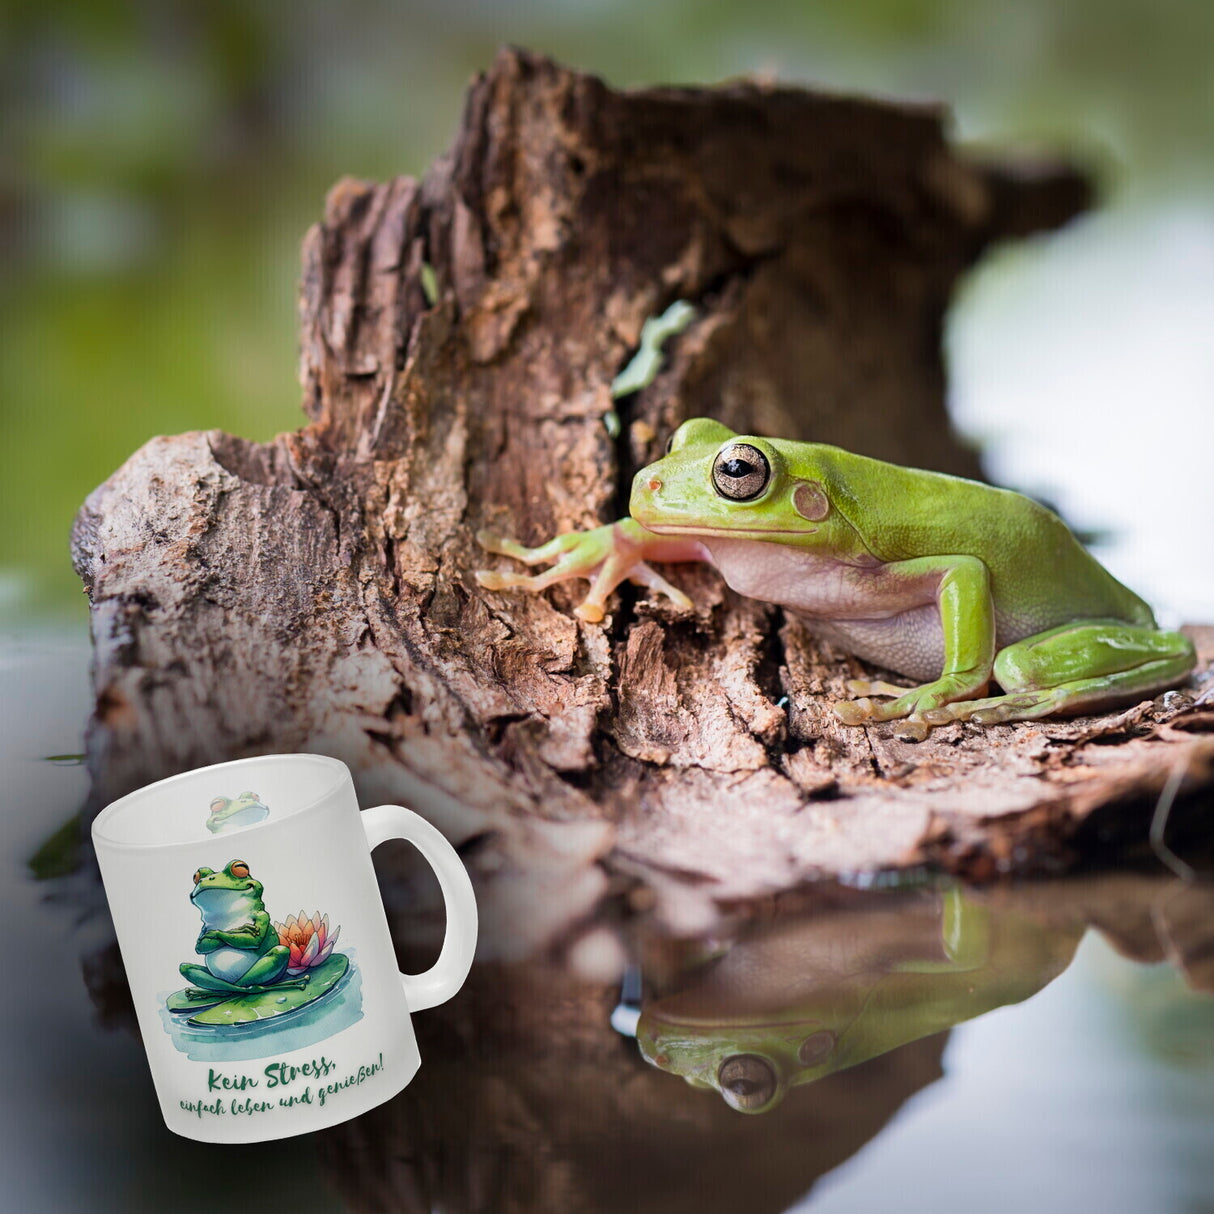 Frosch auf Seerose Kaffeebecher mit Spruch Kein Stress einfach leben und genießen